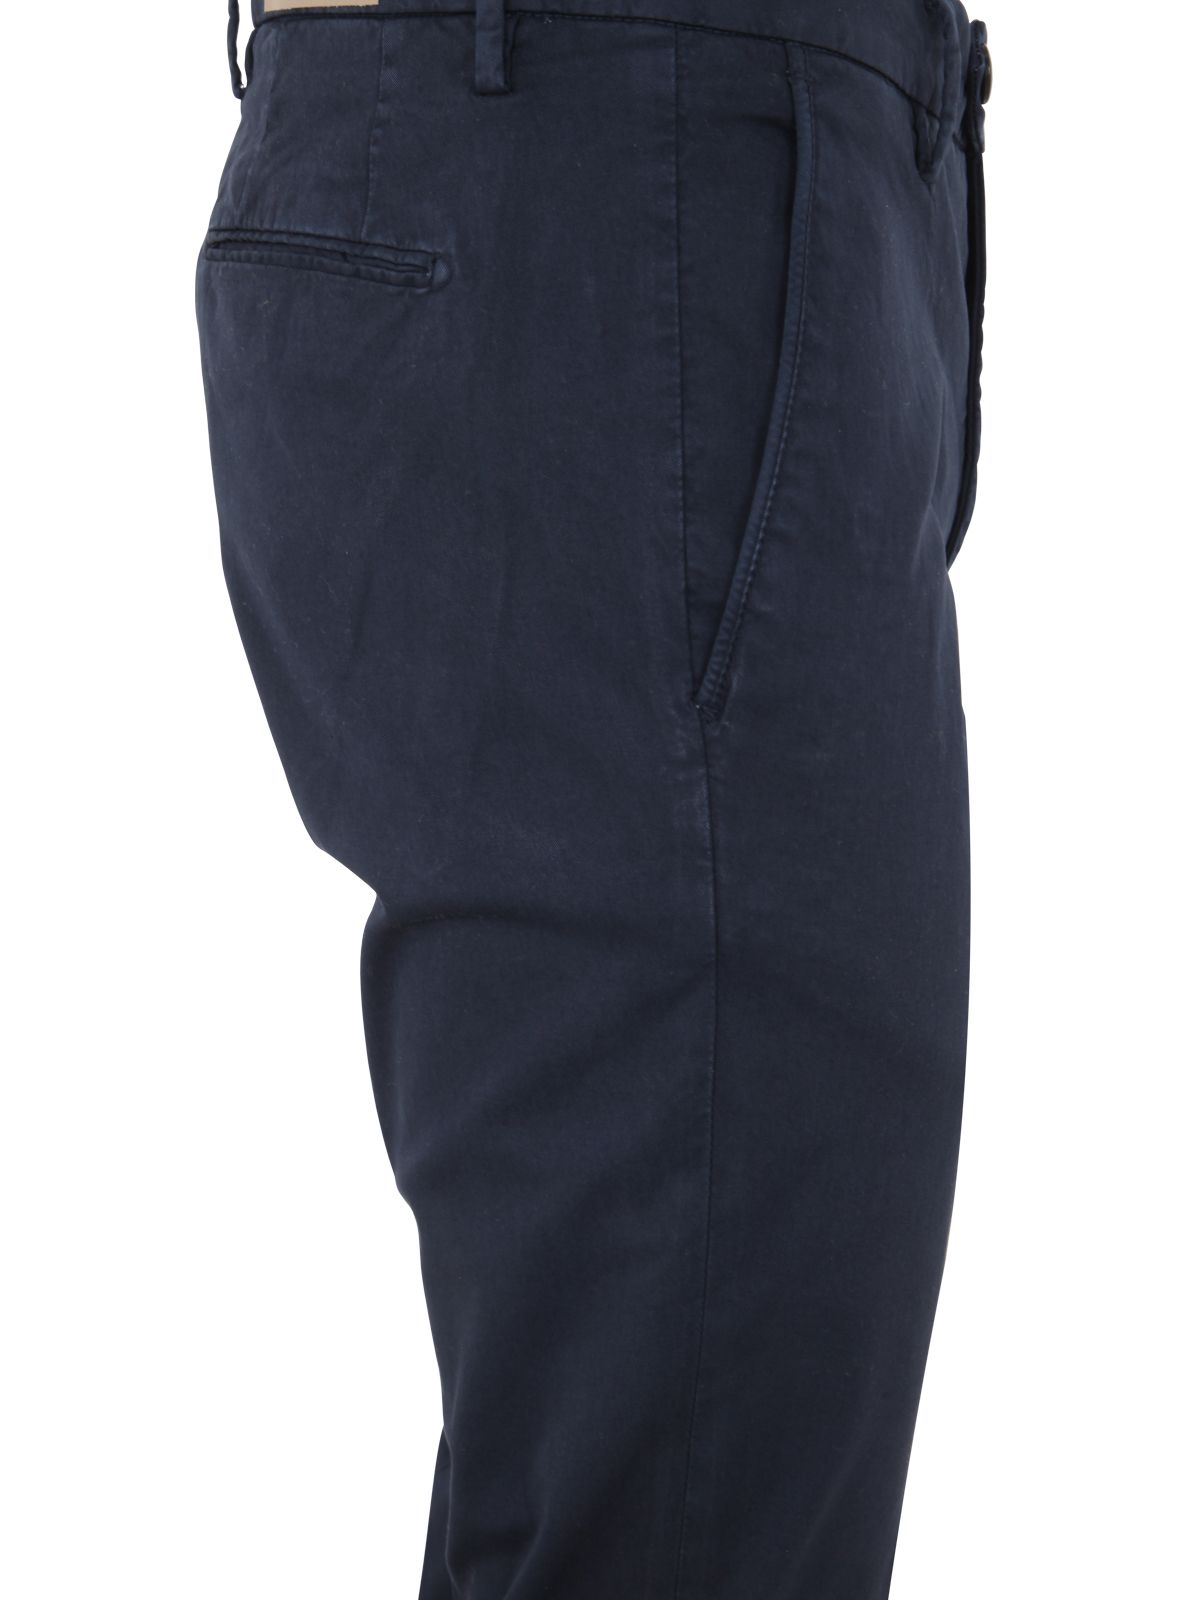 Shop Michael Coal Men's Regular Capri Pockets Trousers